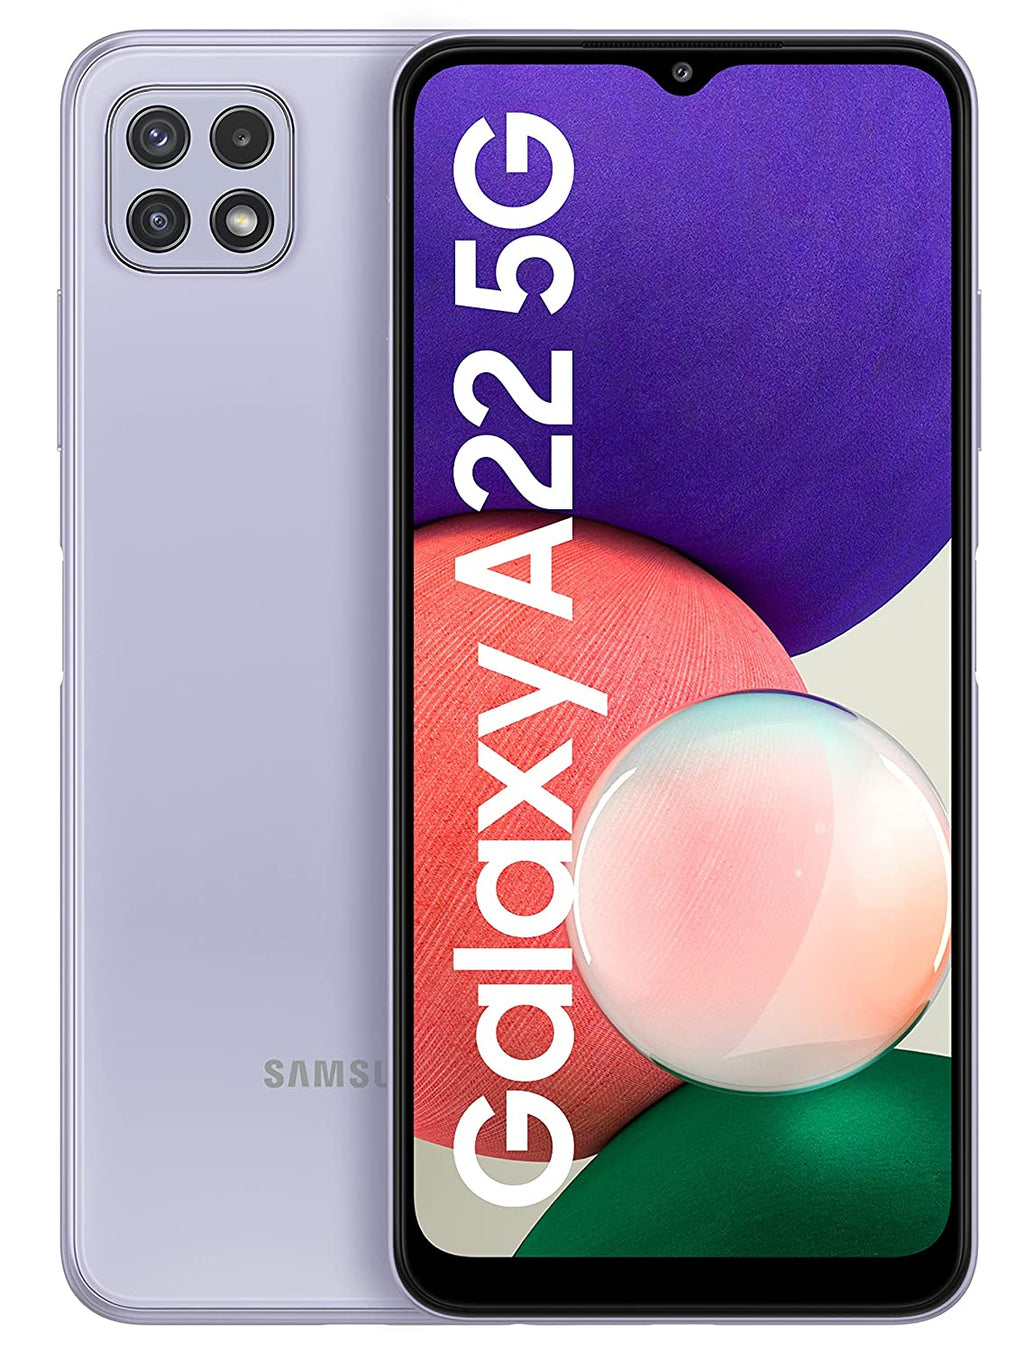 Samsung Galaxy A22 5G 6GB Ram 128GB Storage